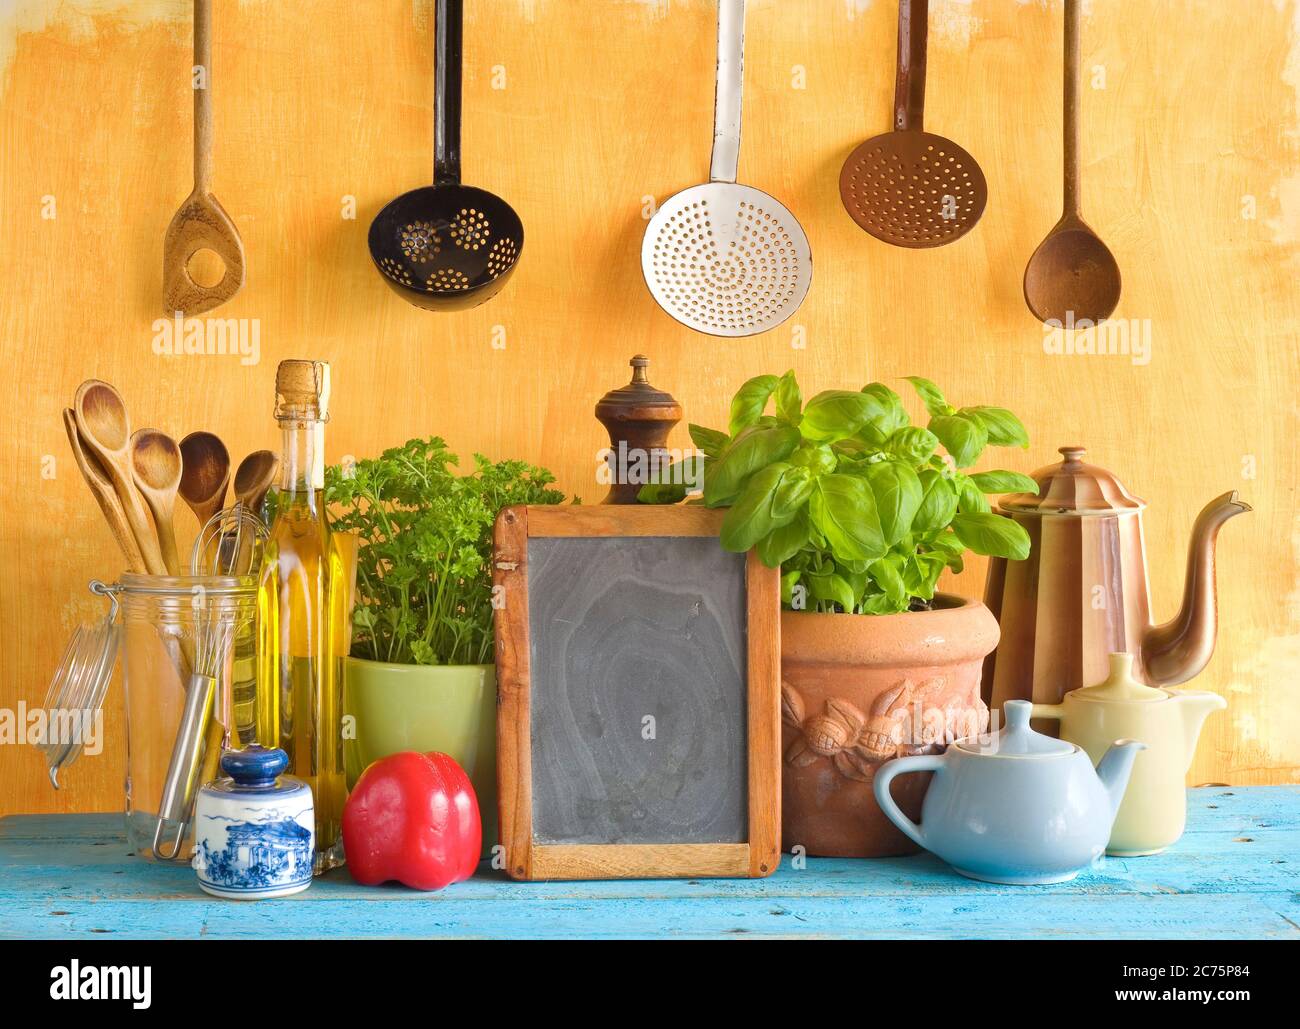 tableau noir pour les recettes de cuisine, ustensiles de cuisine, ingrédients alimentaires, concept de cuisine Banque D'Images